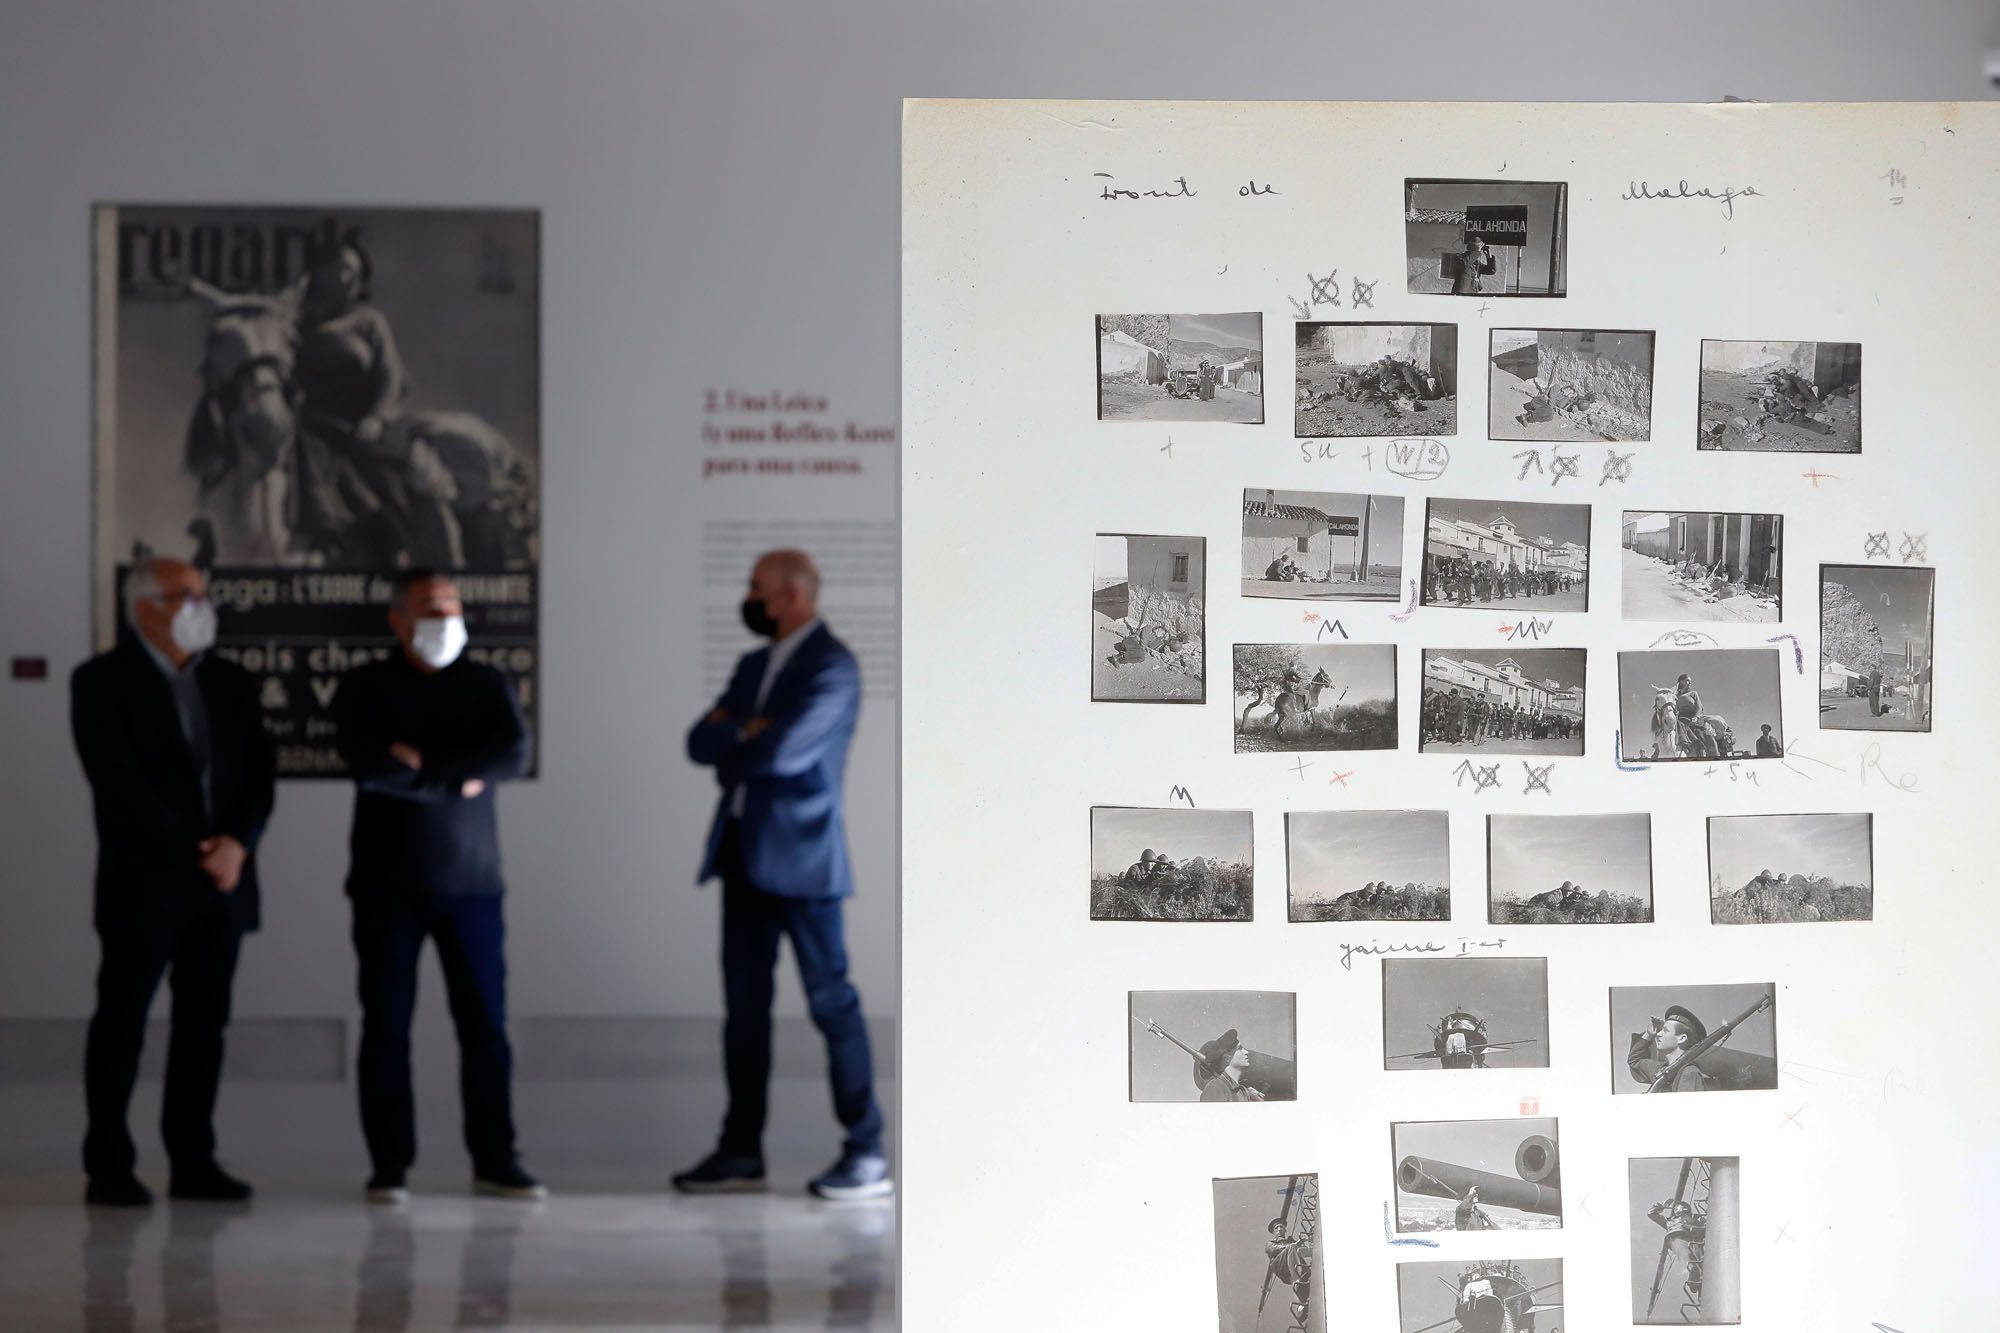 Exposición fotográfica de Gerda Taro y Robert Capa en la sede de la UNIA de Málaga.